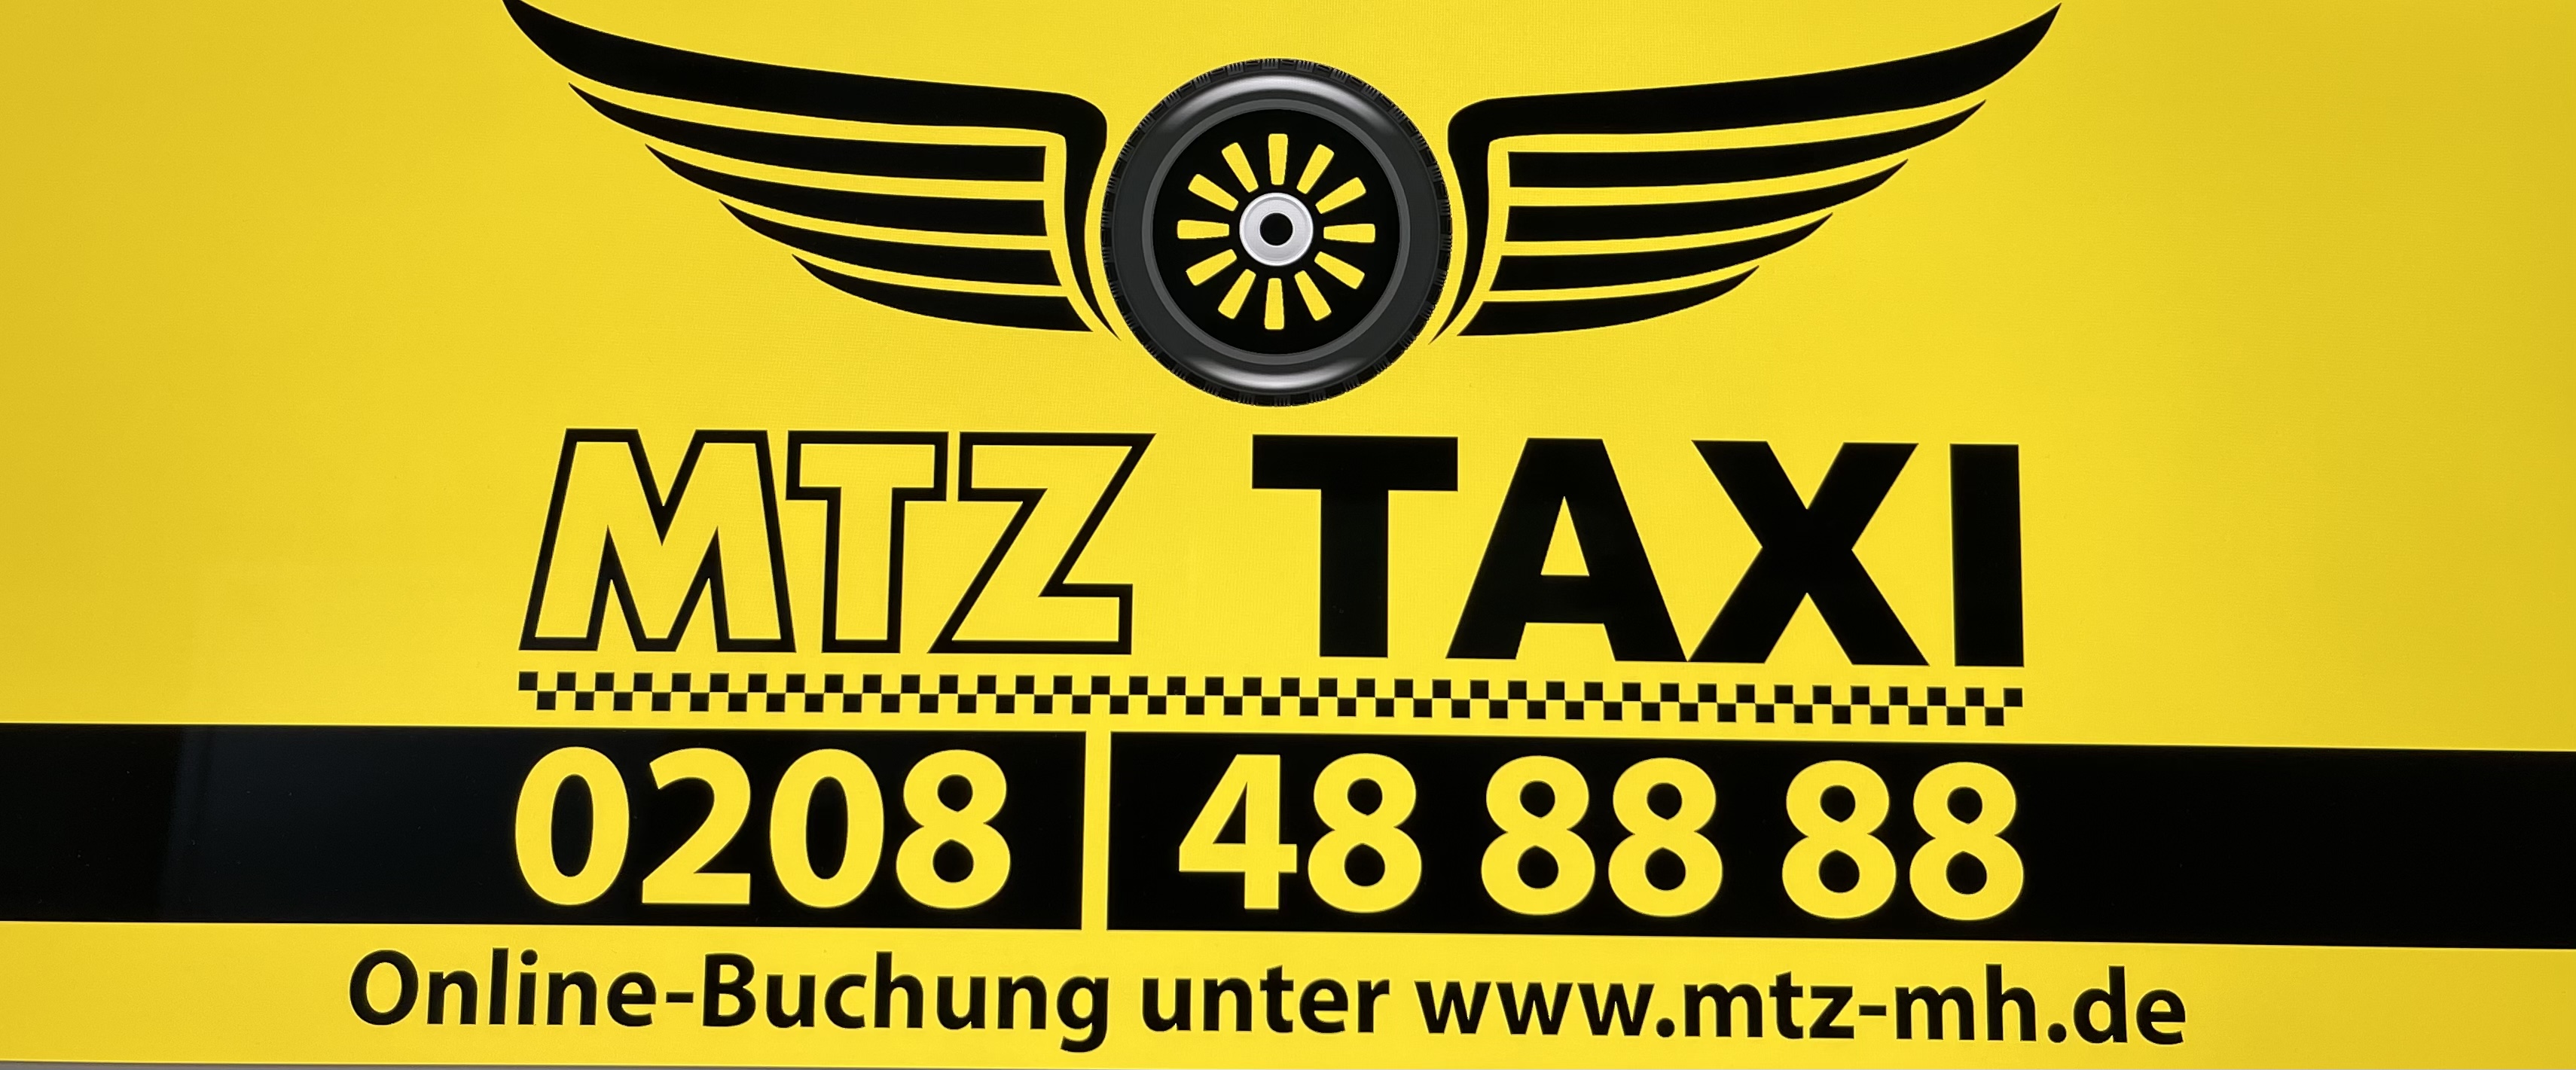 Bild 2 MTZ Taxizentrale GmbH in Mülheim an der Ruhr